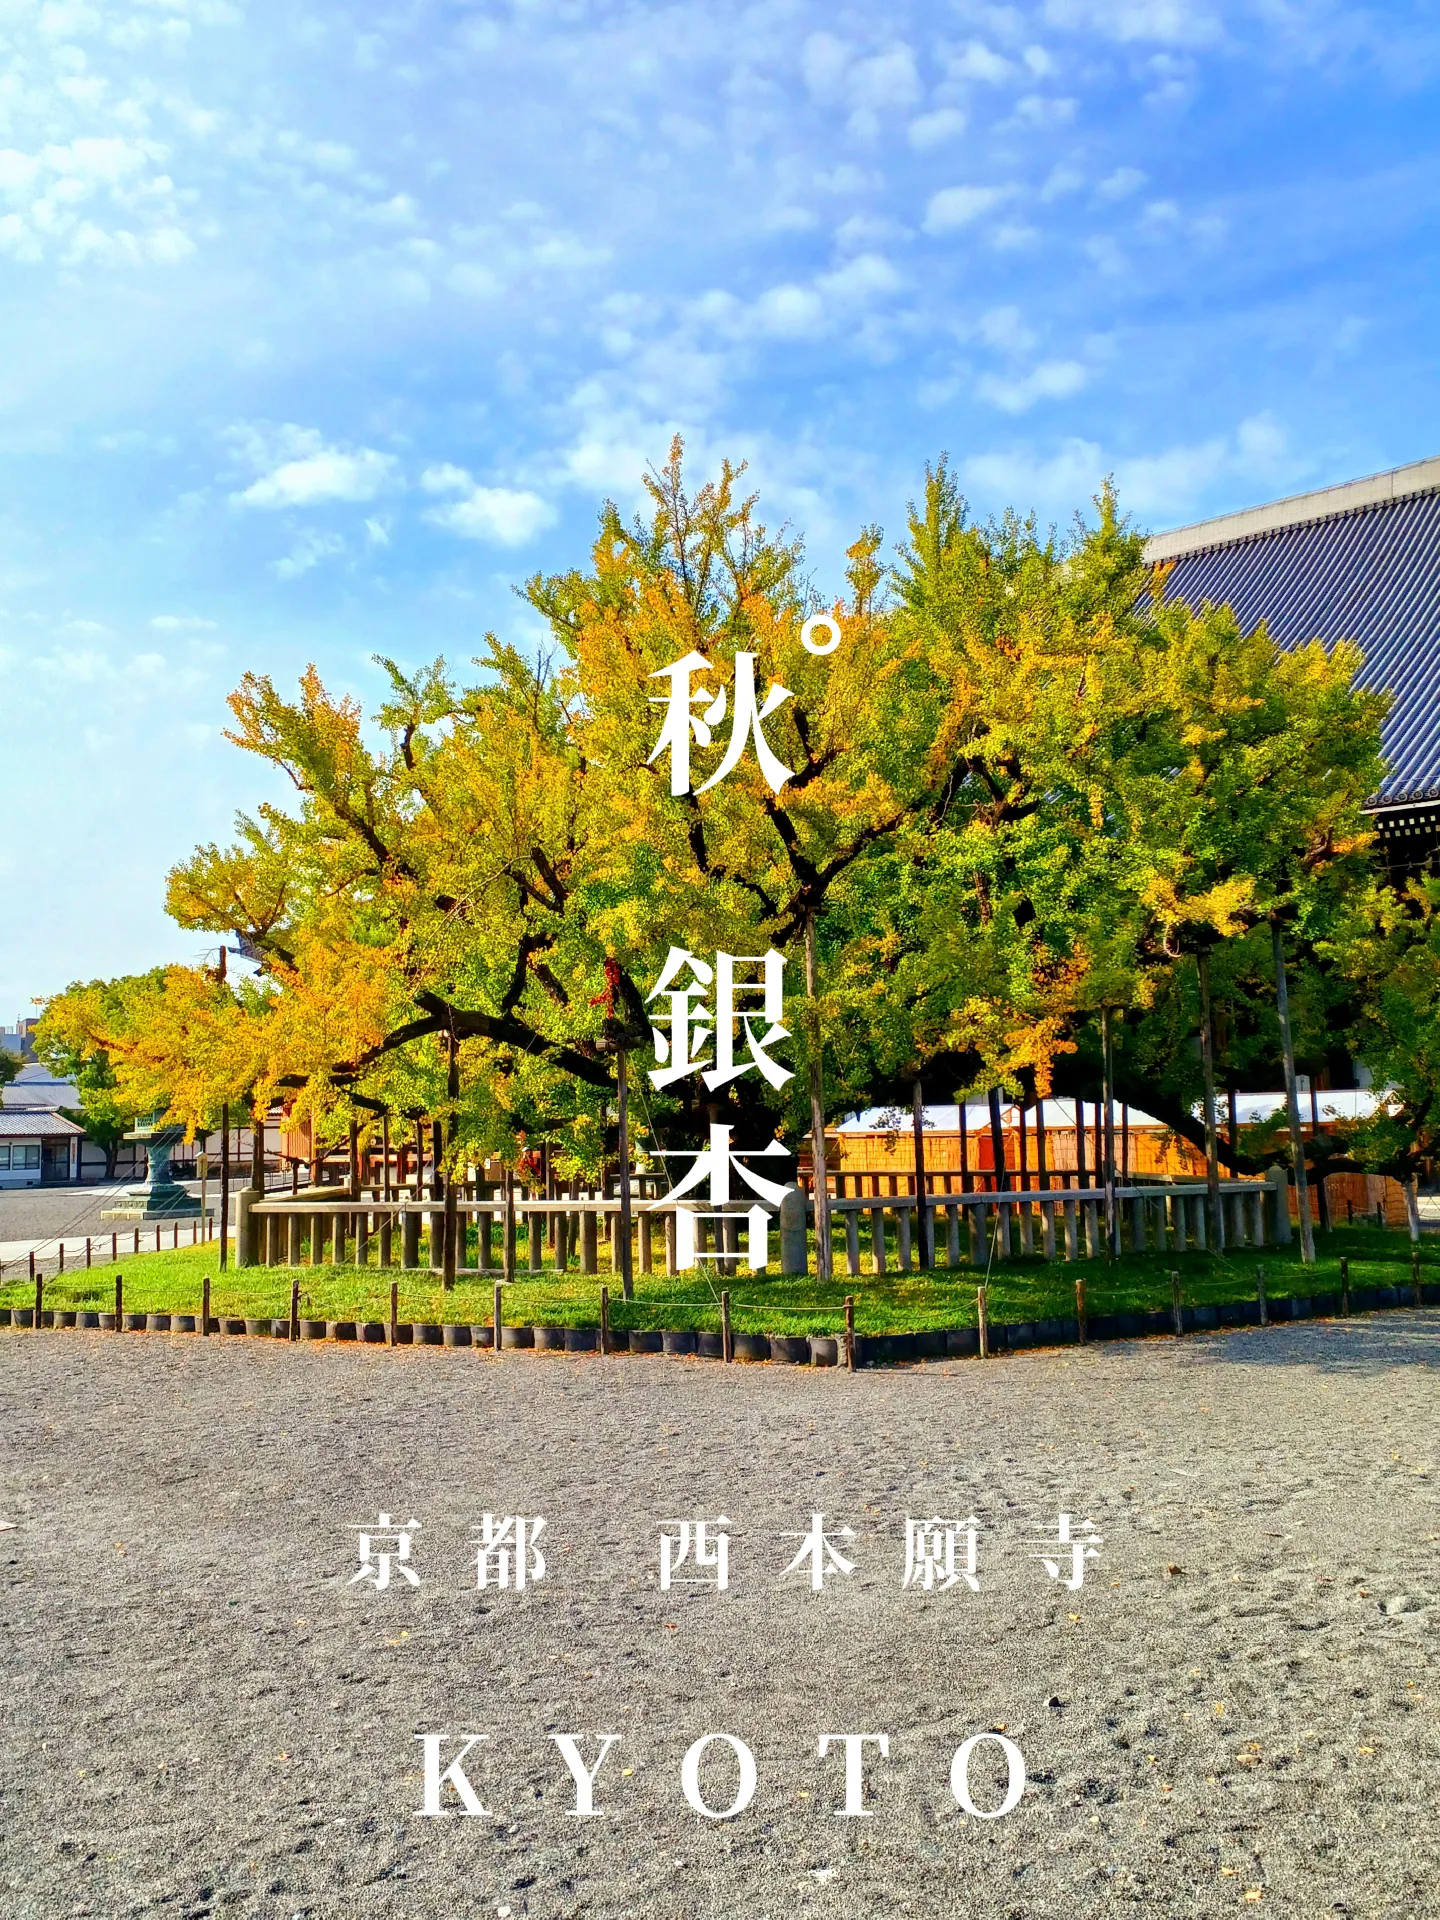 【京都ぶらり】秋晴れの京都から 西本願寺の大銀杏の画像 (0枚目)